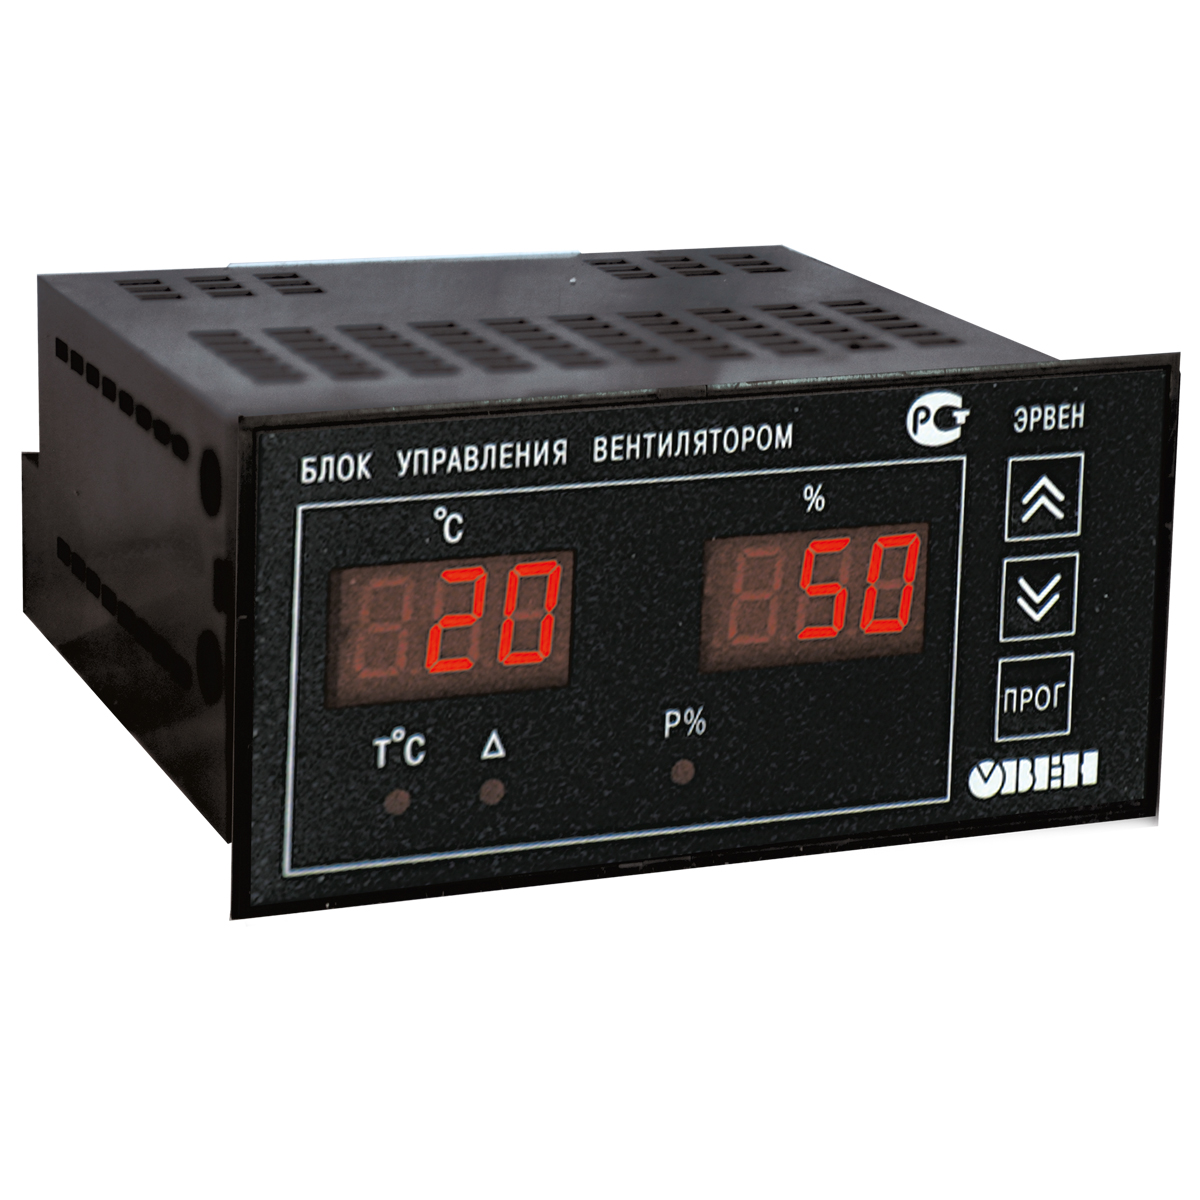 Регулятор скорости вращения вентилятора в зависимости от температуры ОВЕН ЭРВЕН